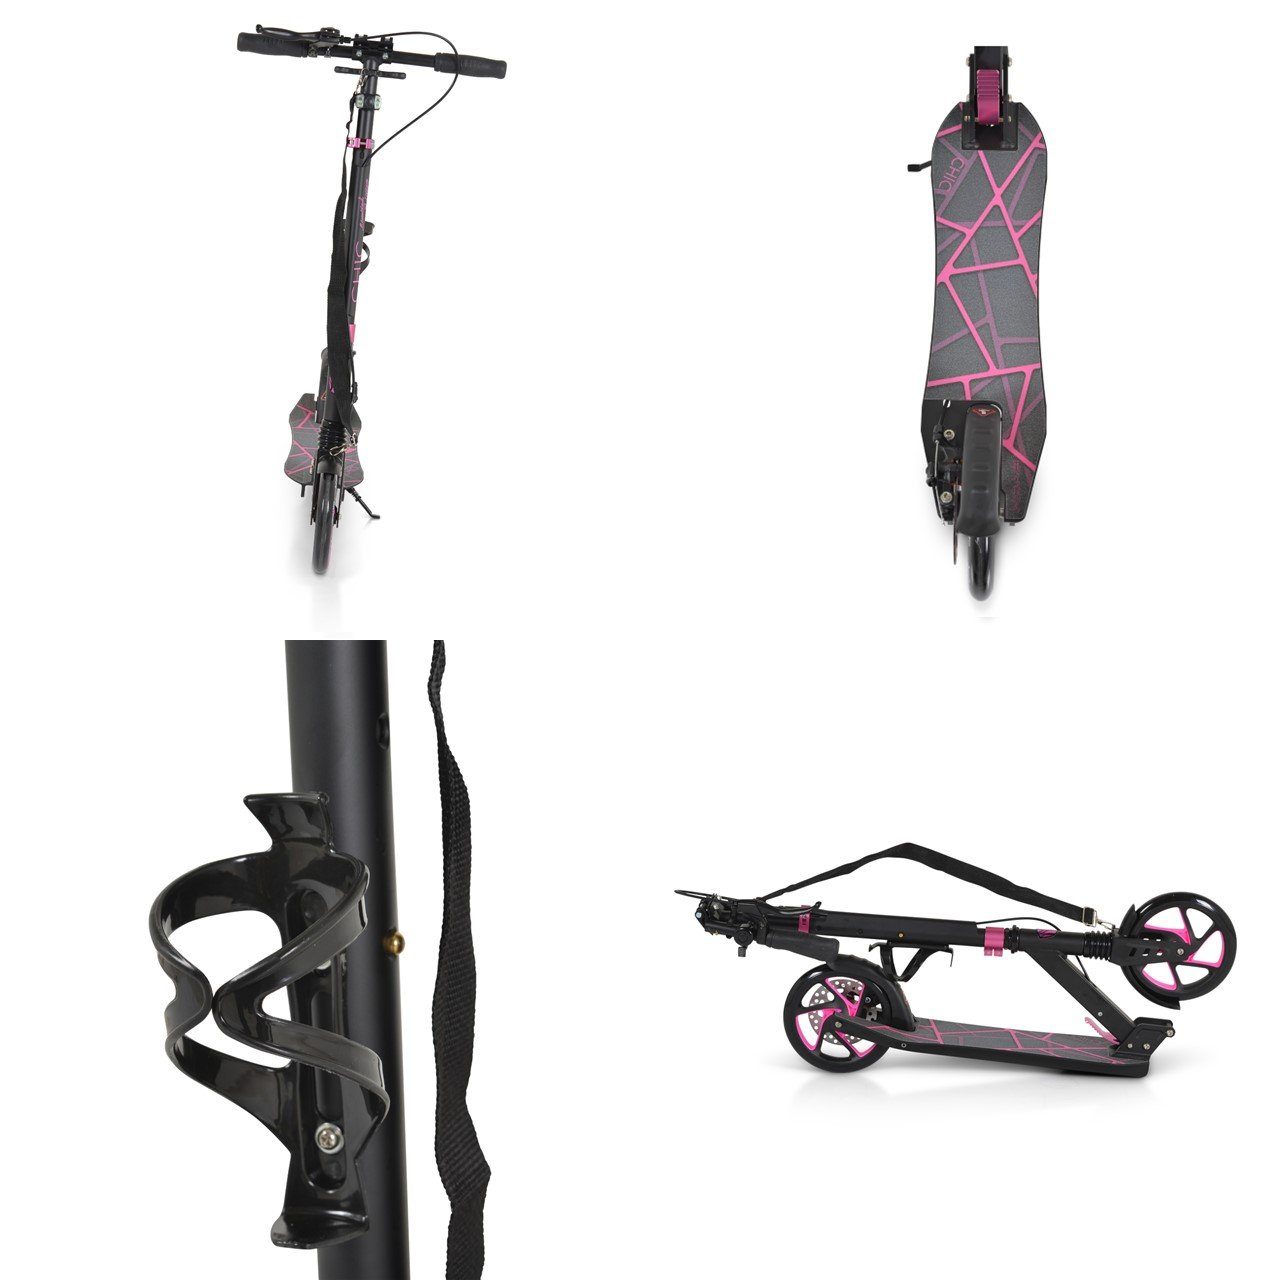 Seitenständer, PU-Räder, LED-Licht, Lager, Byox Kinderroller pink ABEC-7 Chic faltbar Cityroller